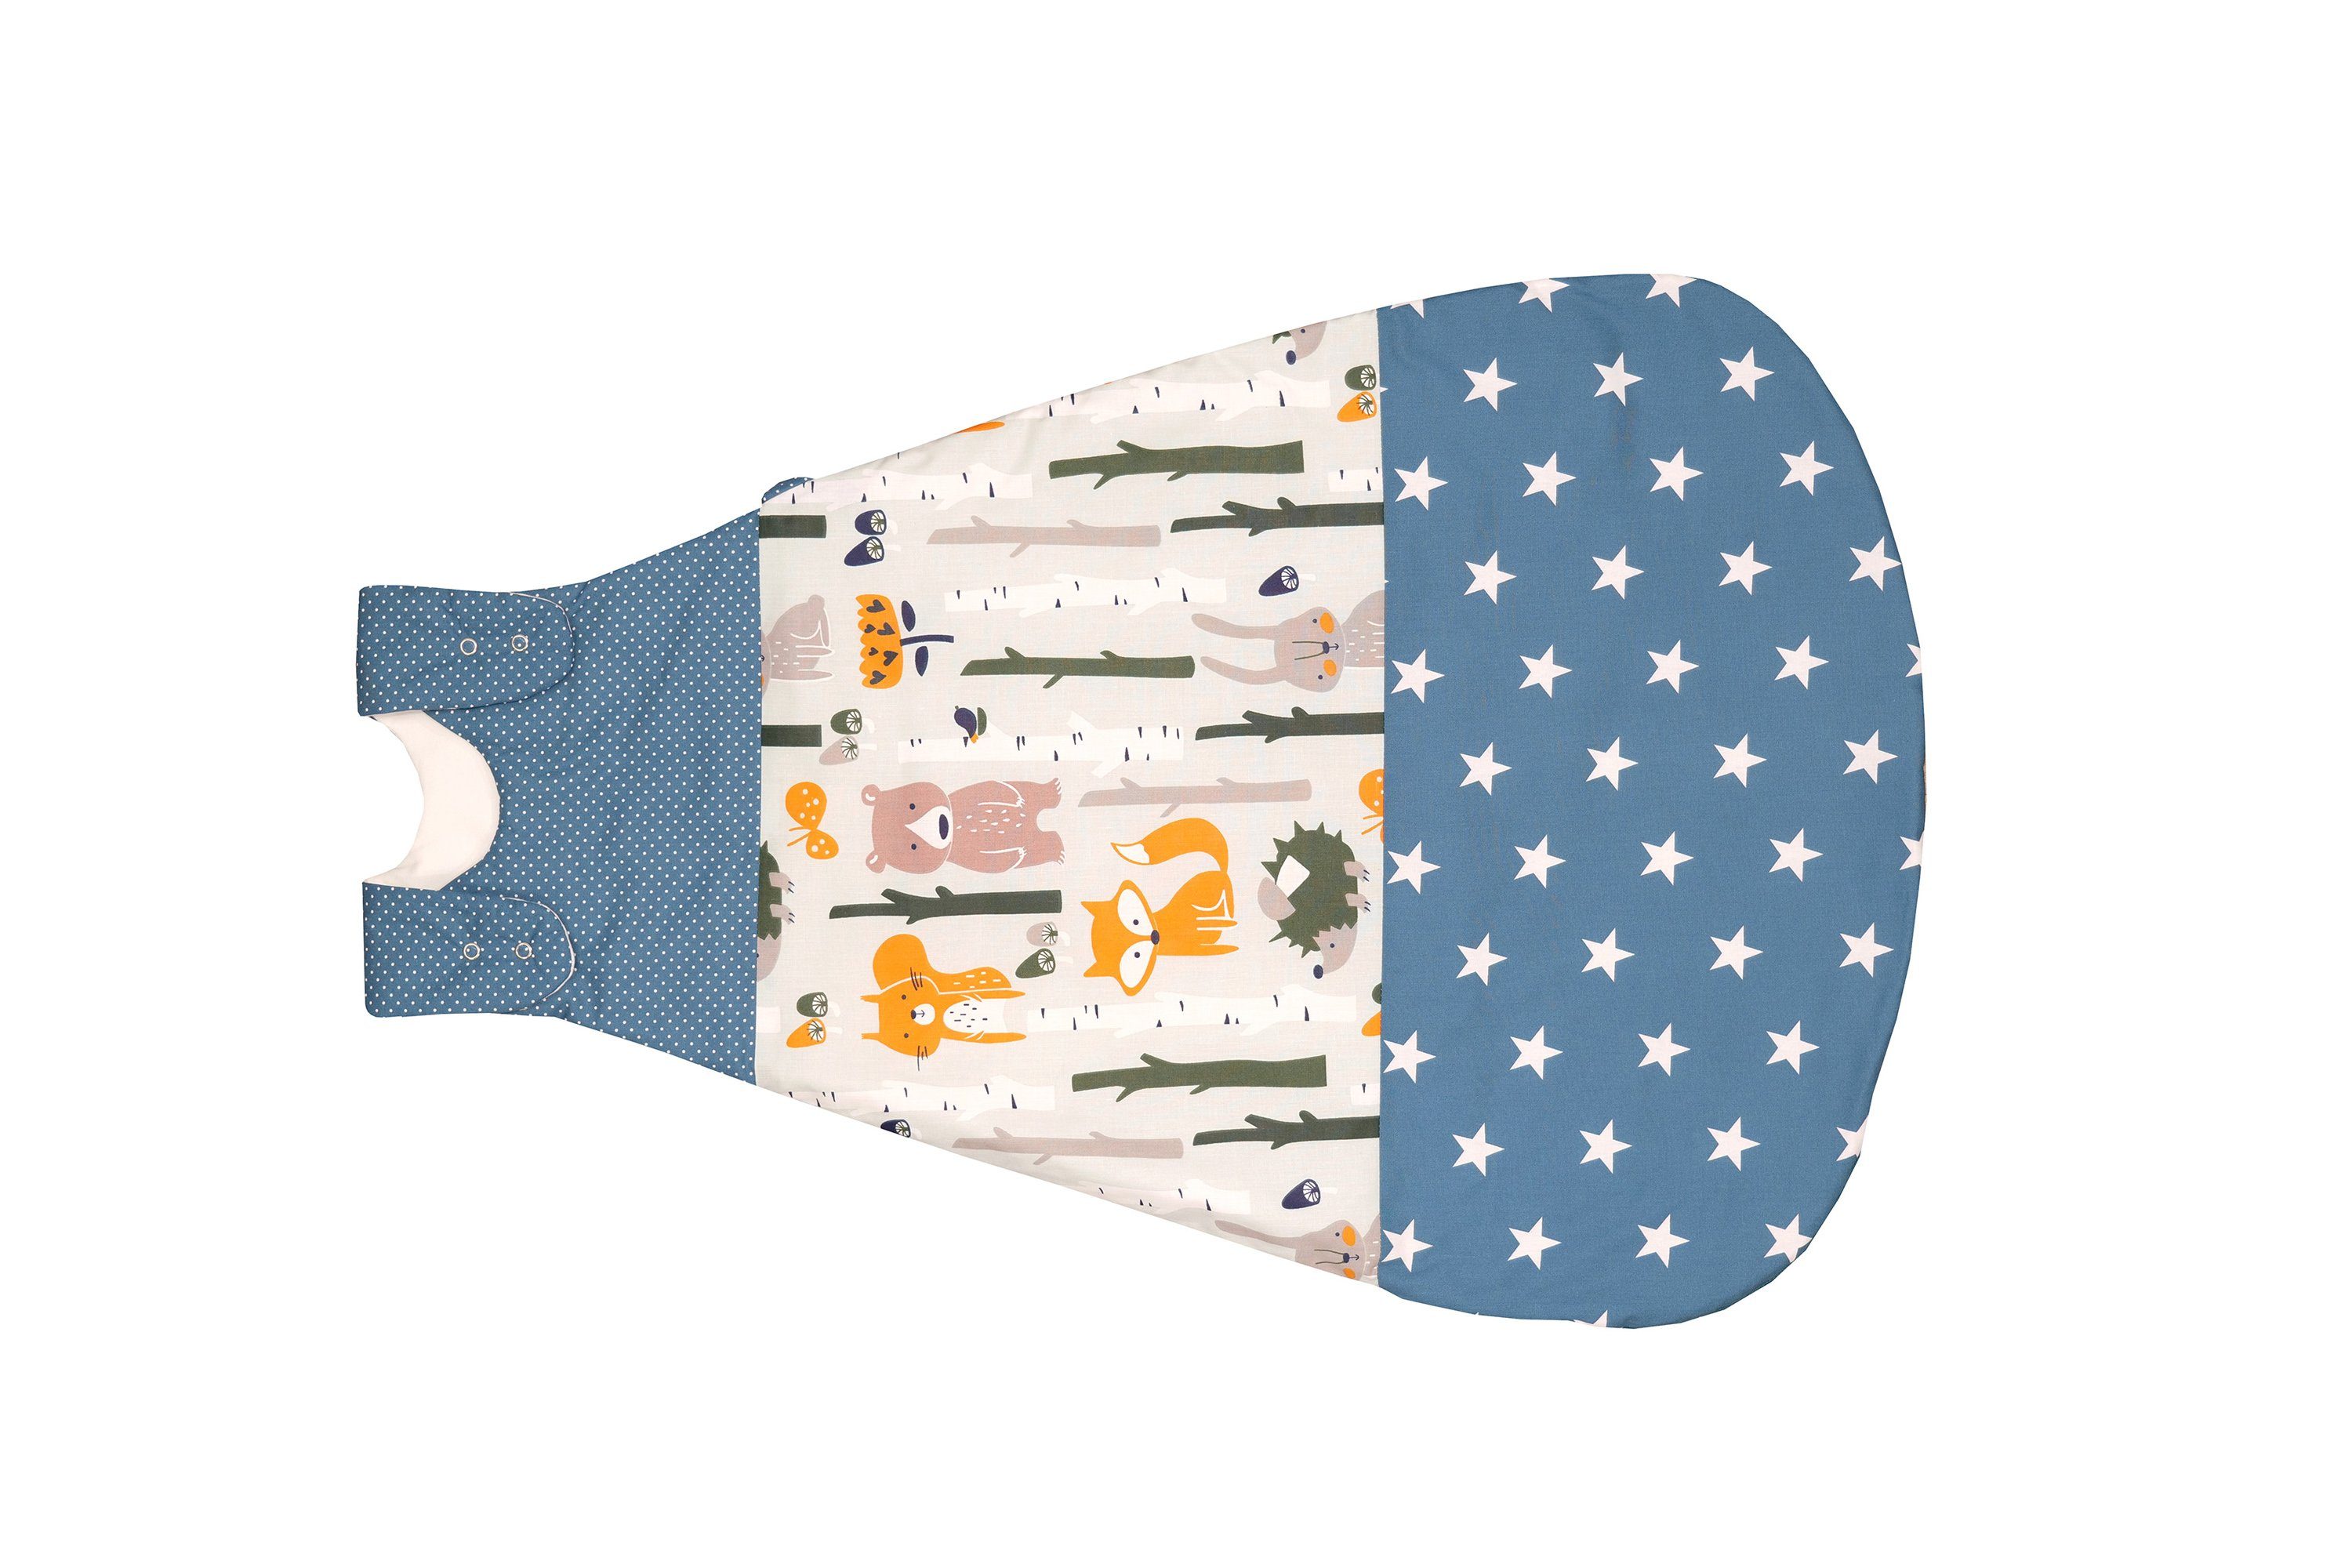 62-74 Größe TupTam Baby Unisex Schlafsack Ärmellos Wattiert Imagine Beige Farbe 